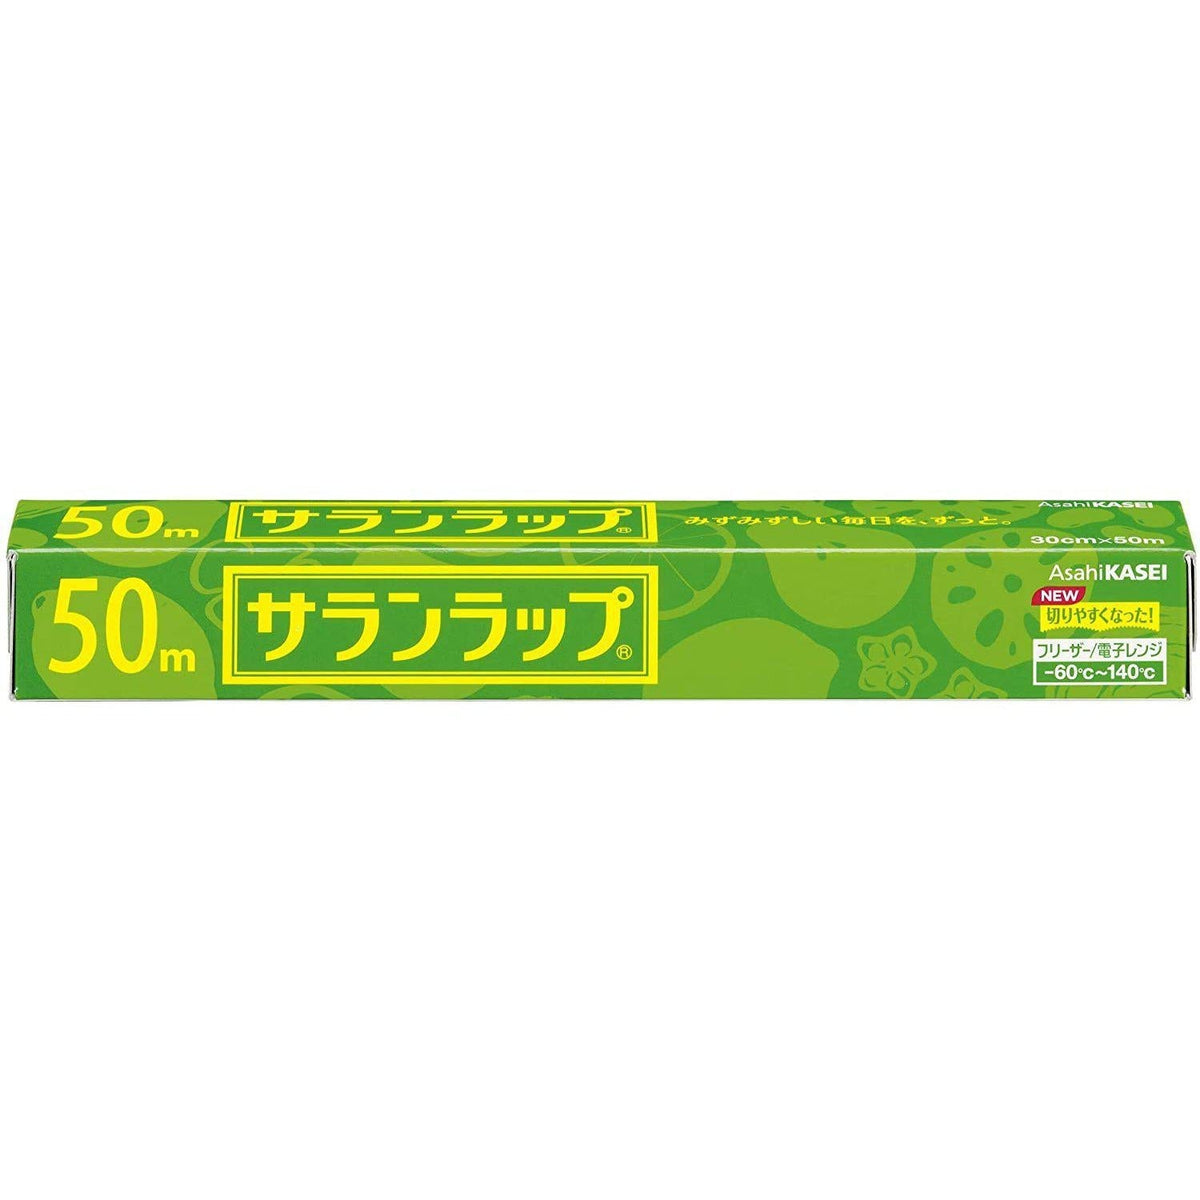 Asahi Kasei Saran Wrap Japanese Plastic Wrap 22cm x 50m